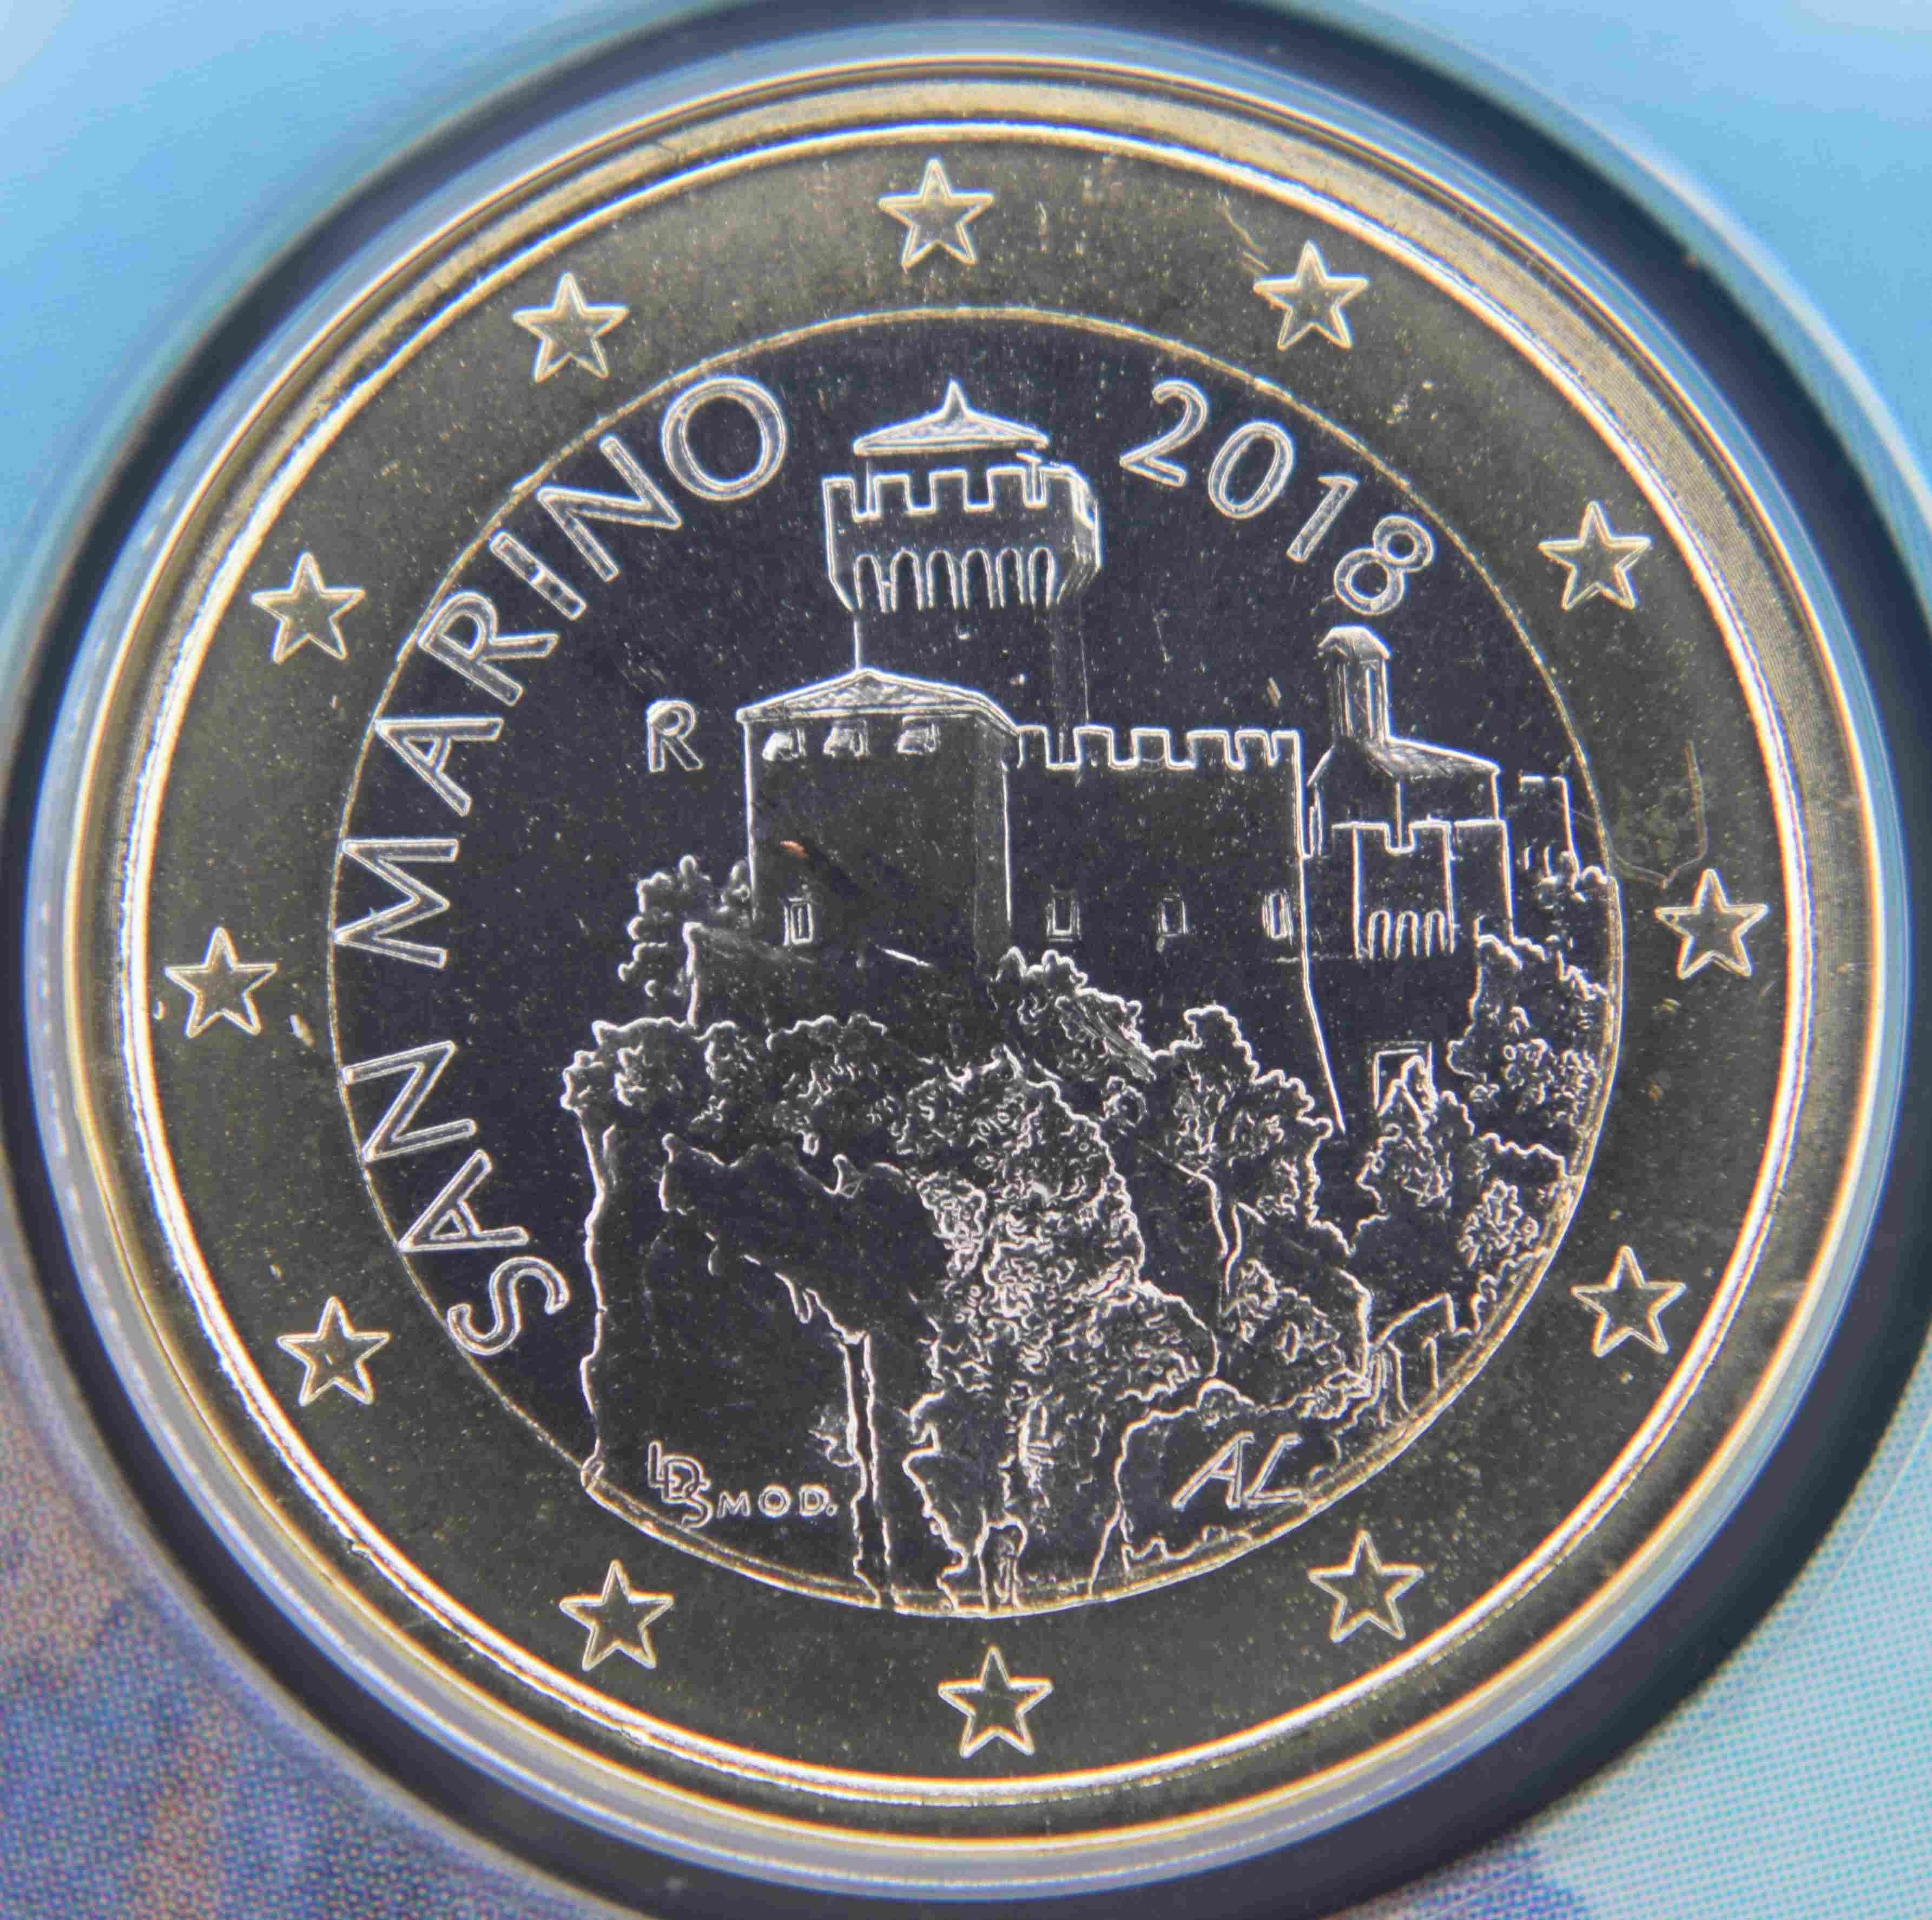 San Marino 1 Euro Münze 2018 - euro-muenzen.tv - Der Online Euromünzen